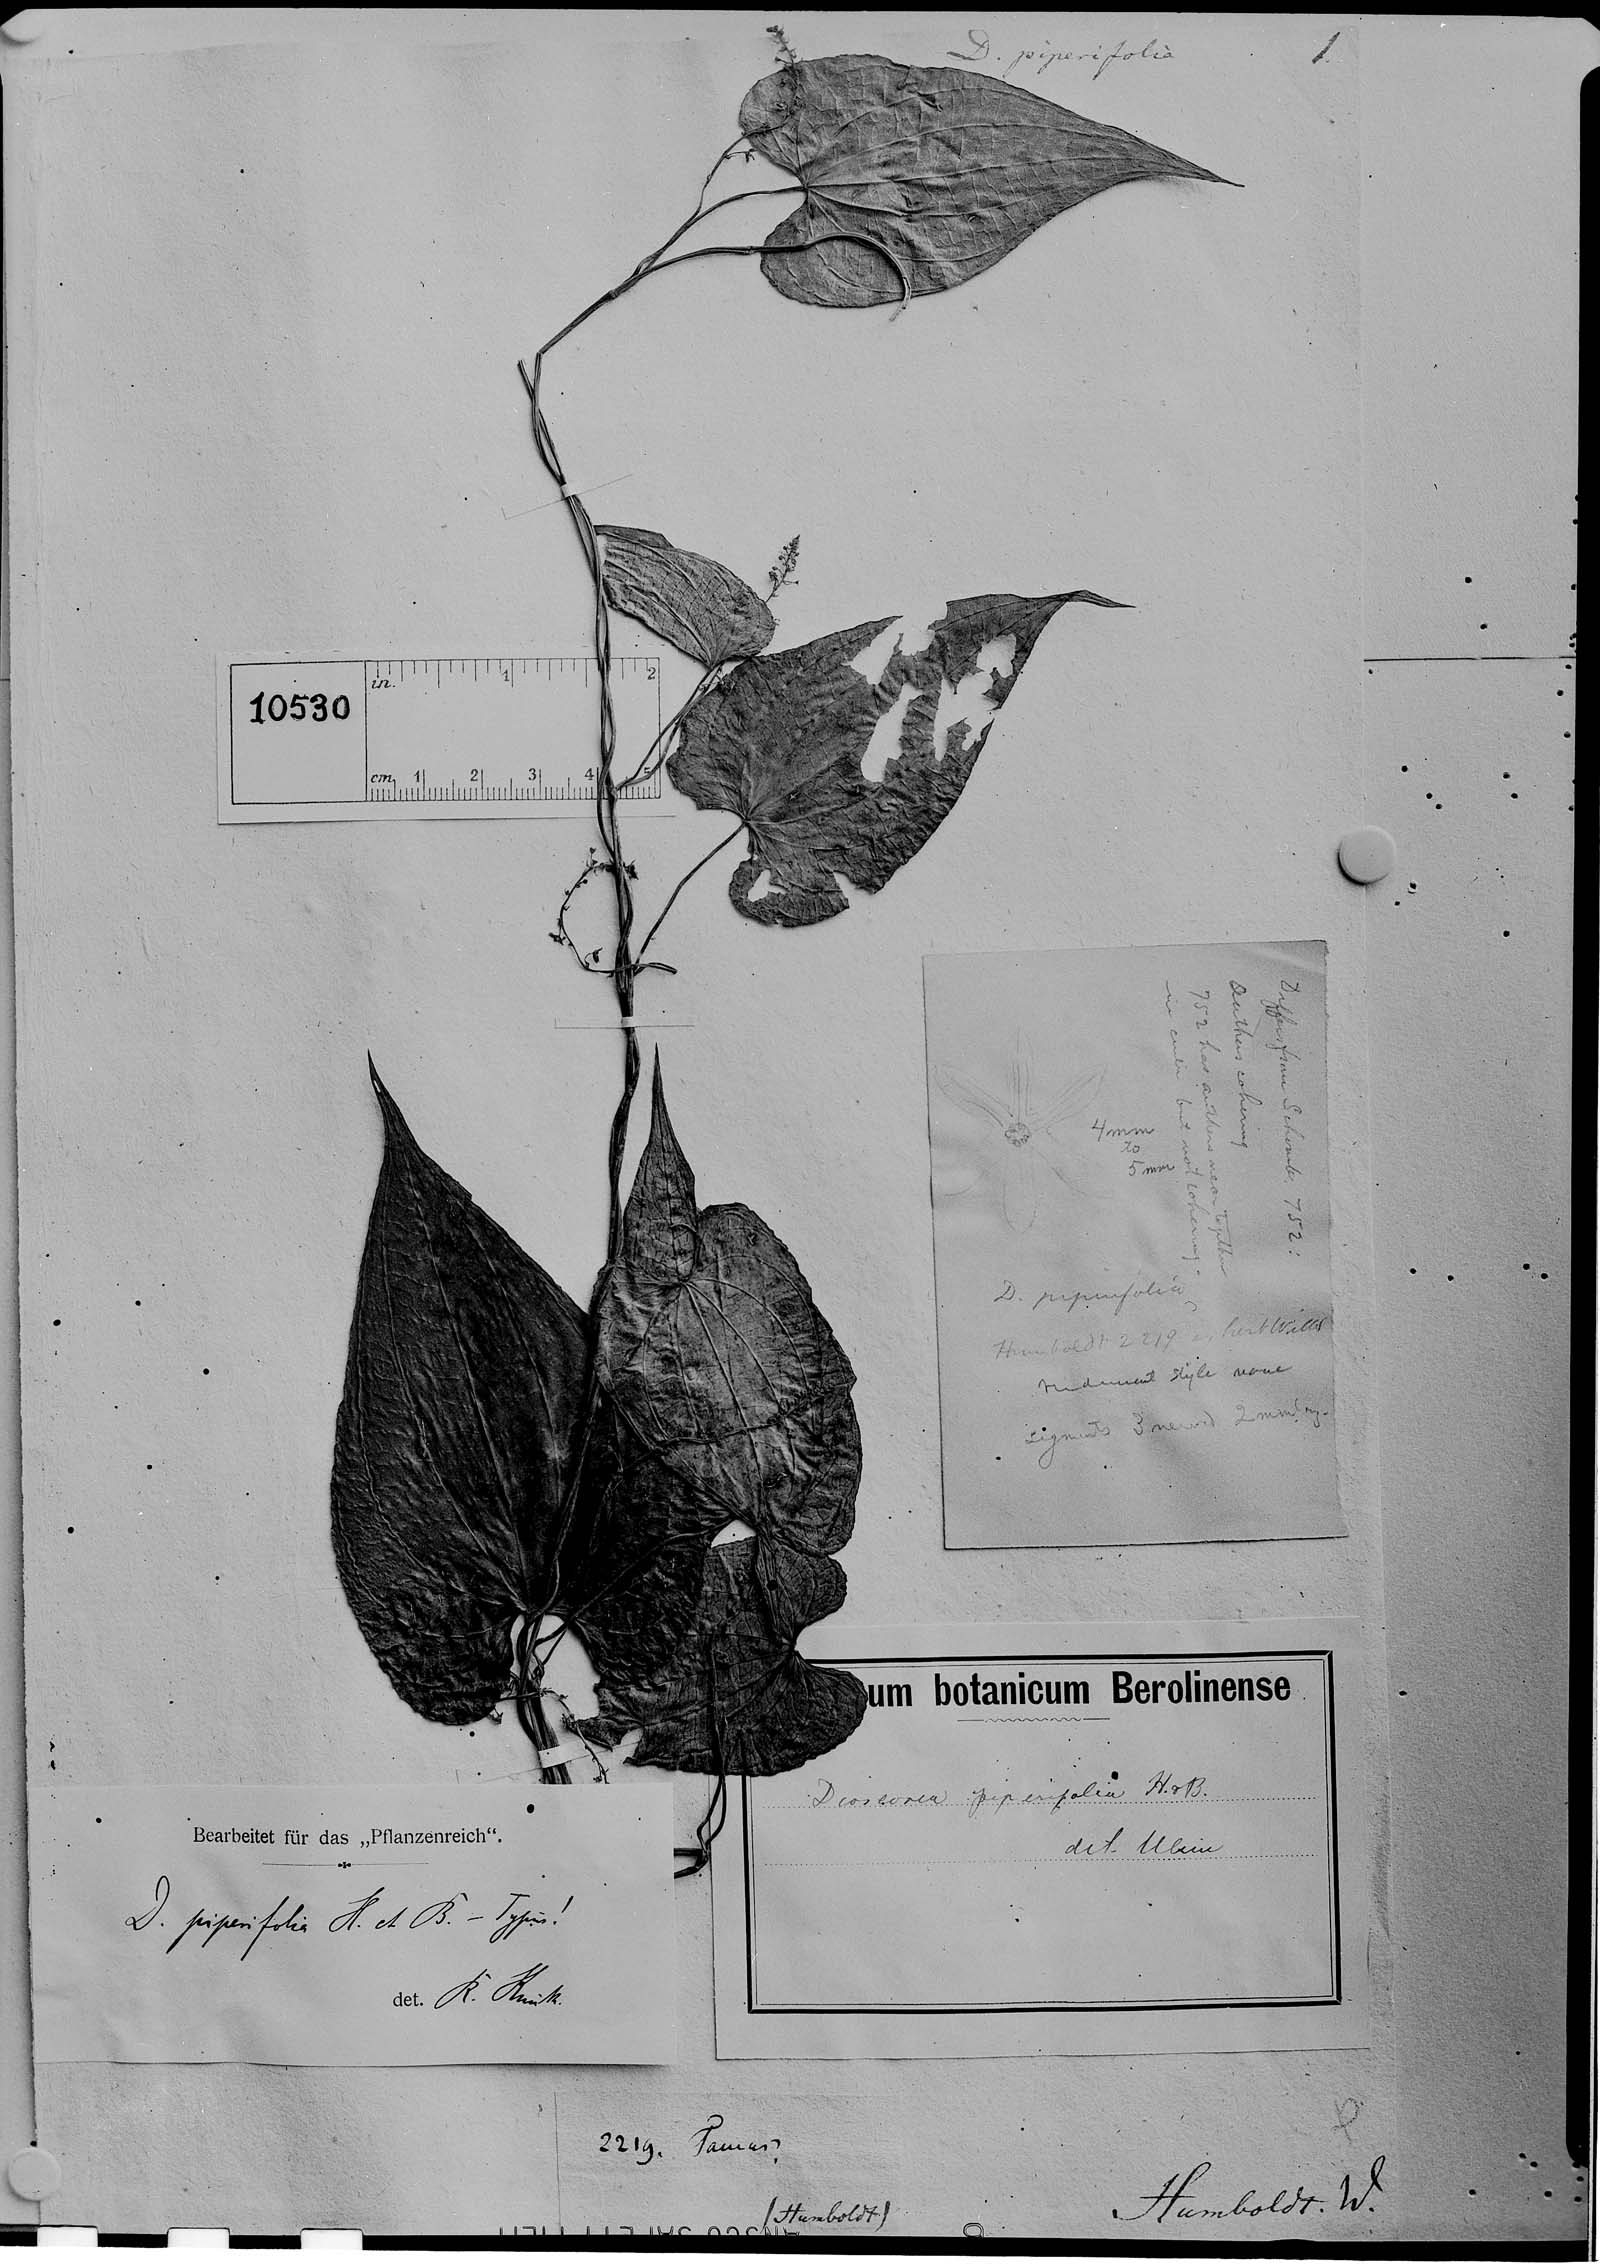 Dioscorea piperifolia image